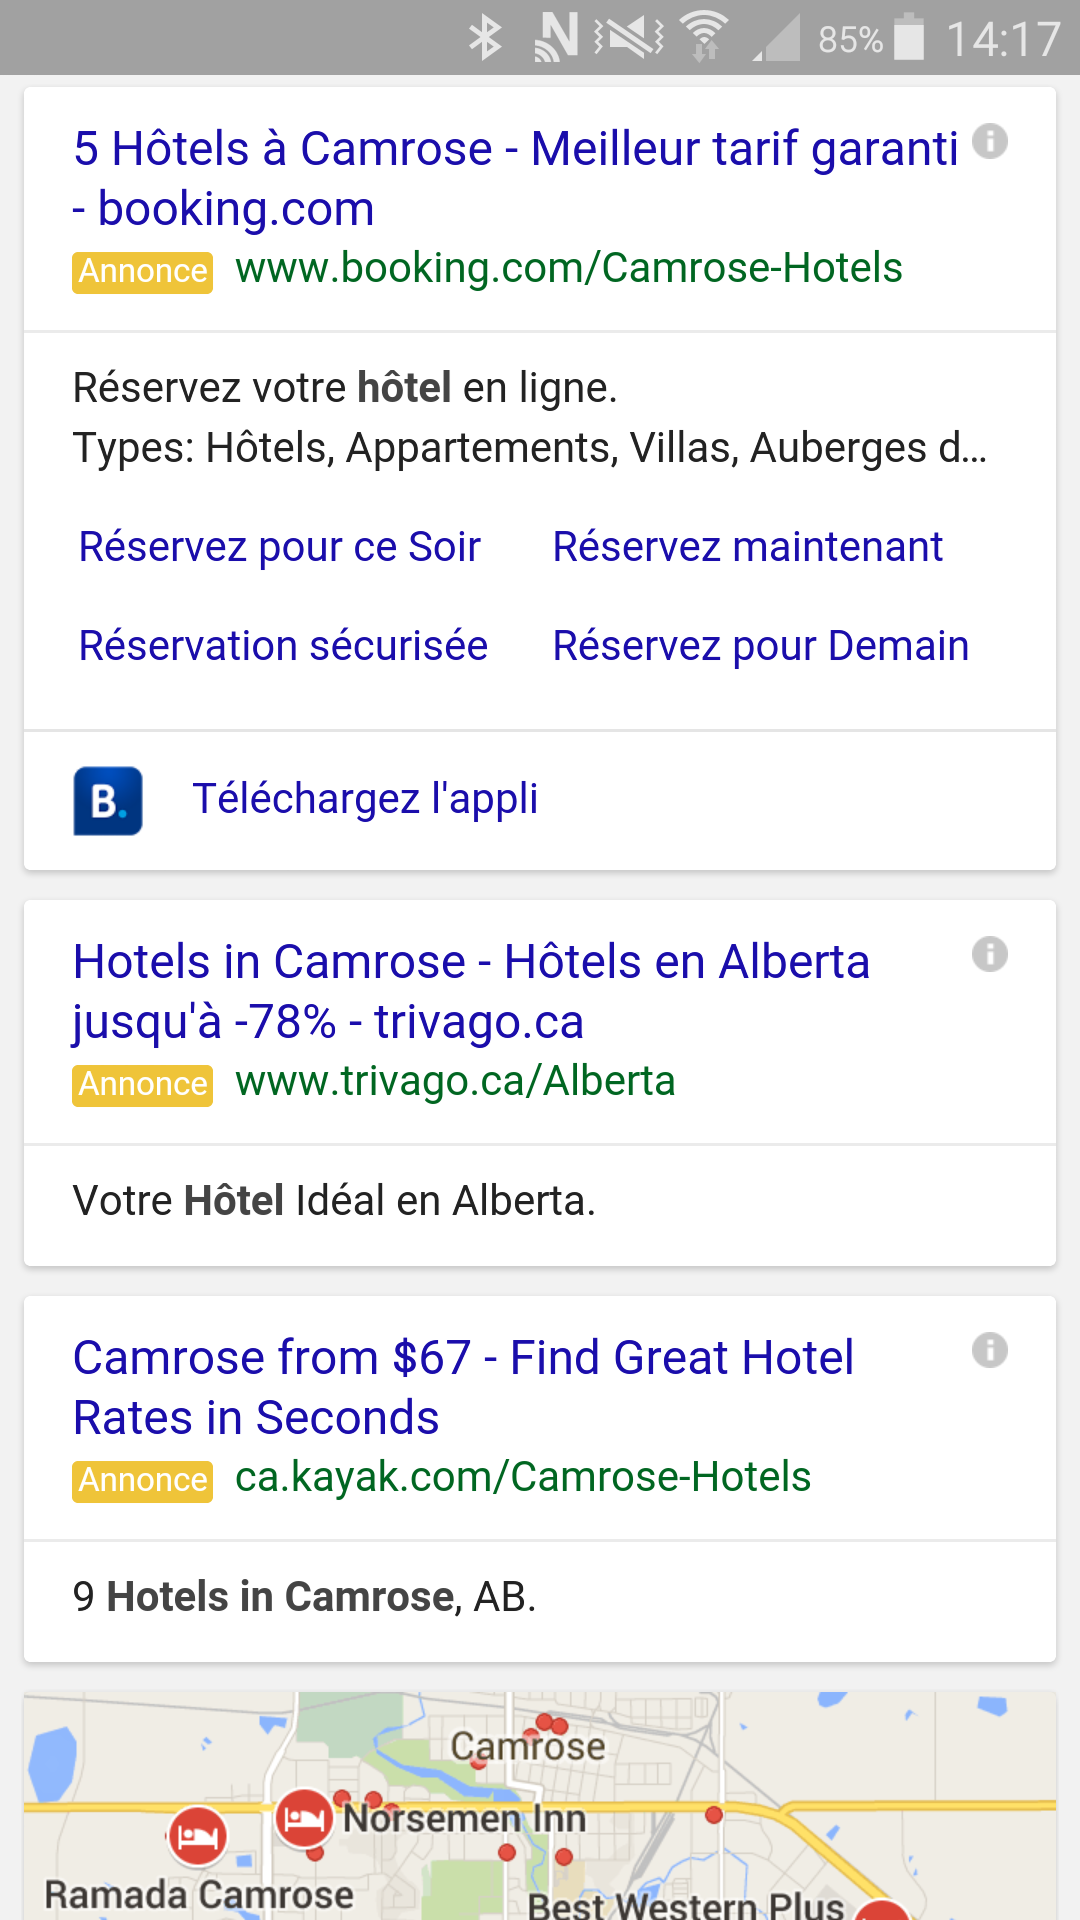 Résultats de recherche mobile pour "hôtels à Camrose".